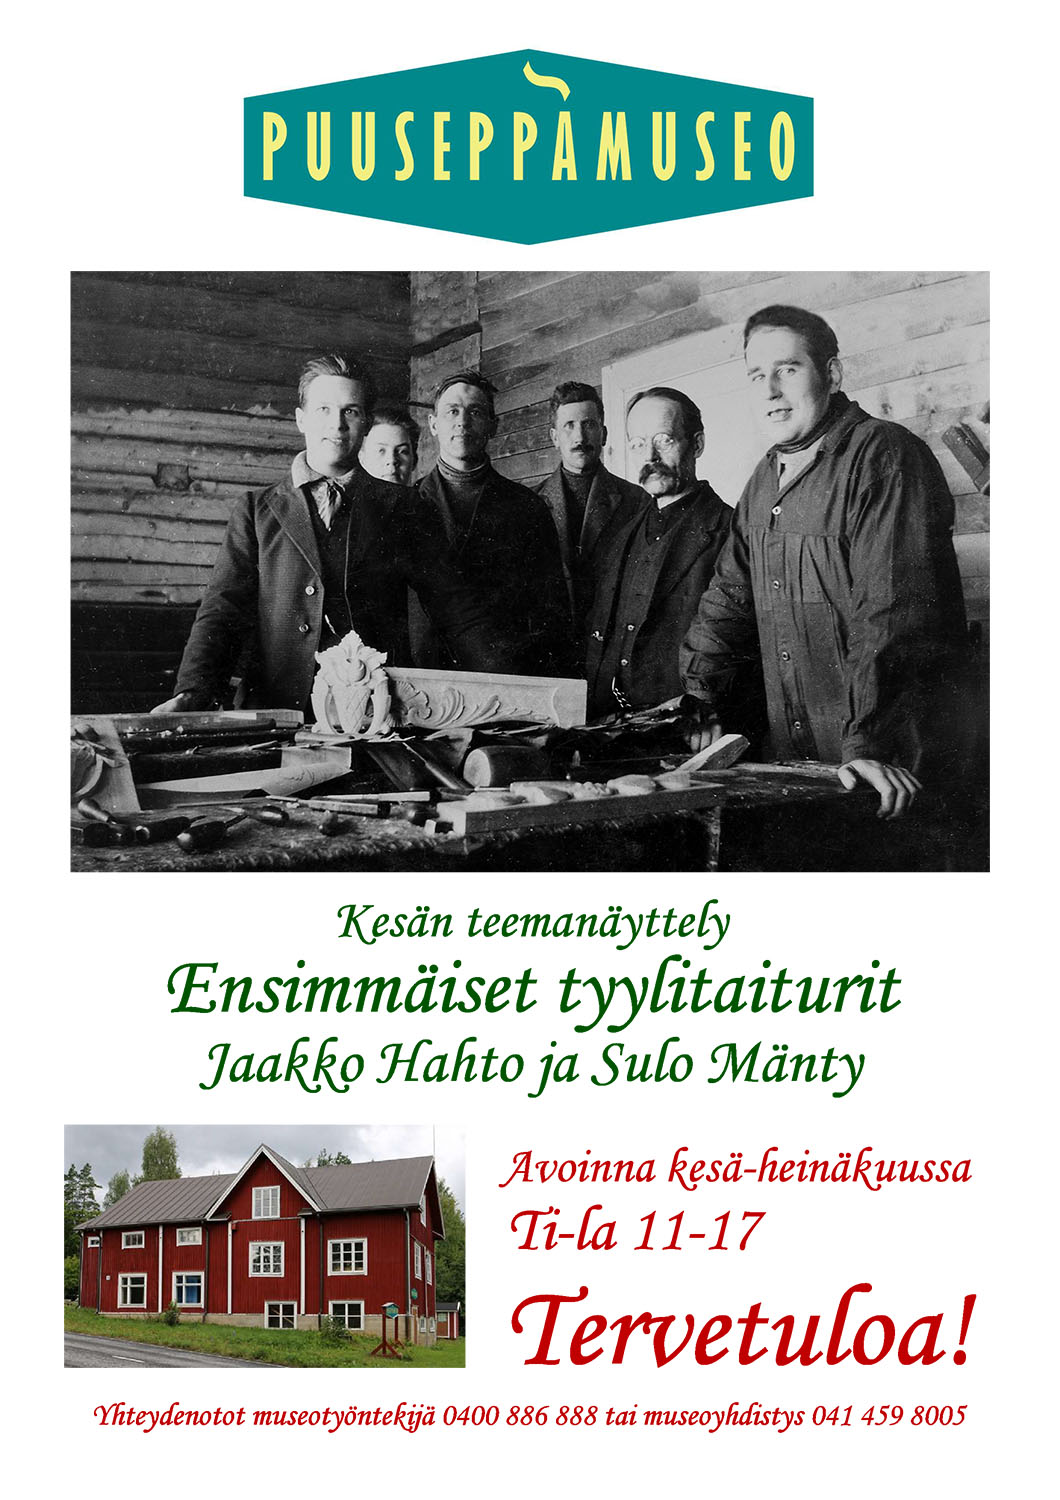 Puuseppämuseo | Kesän 2018 teemanäyttely | Ensimmäiset tyylitaiturit<br />
Jaakko Hahto ja Sulo Mänty